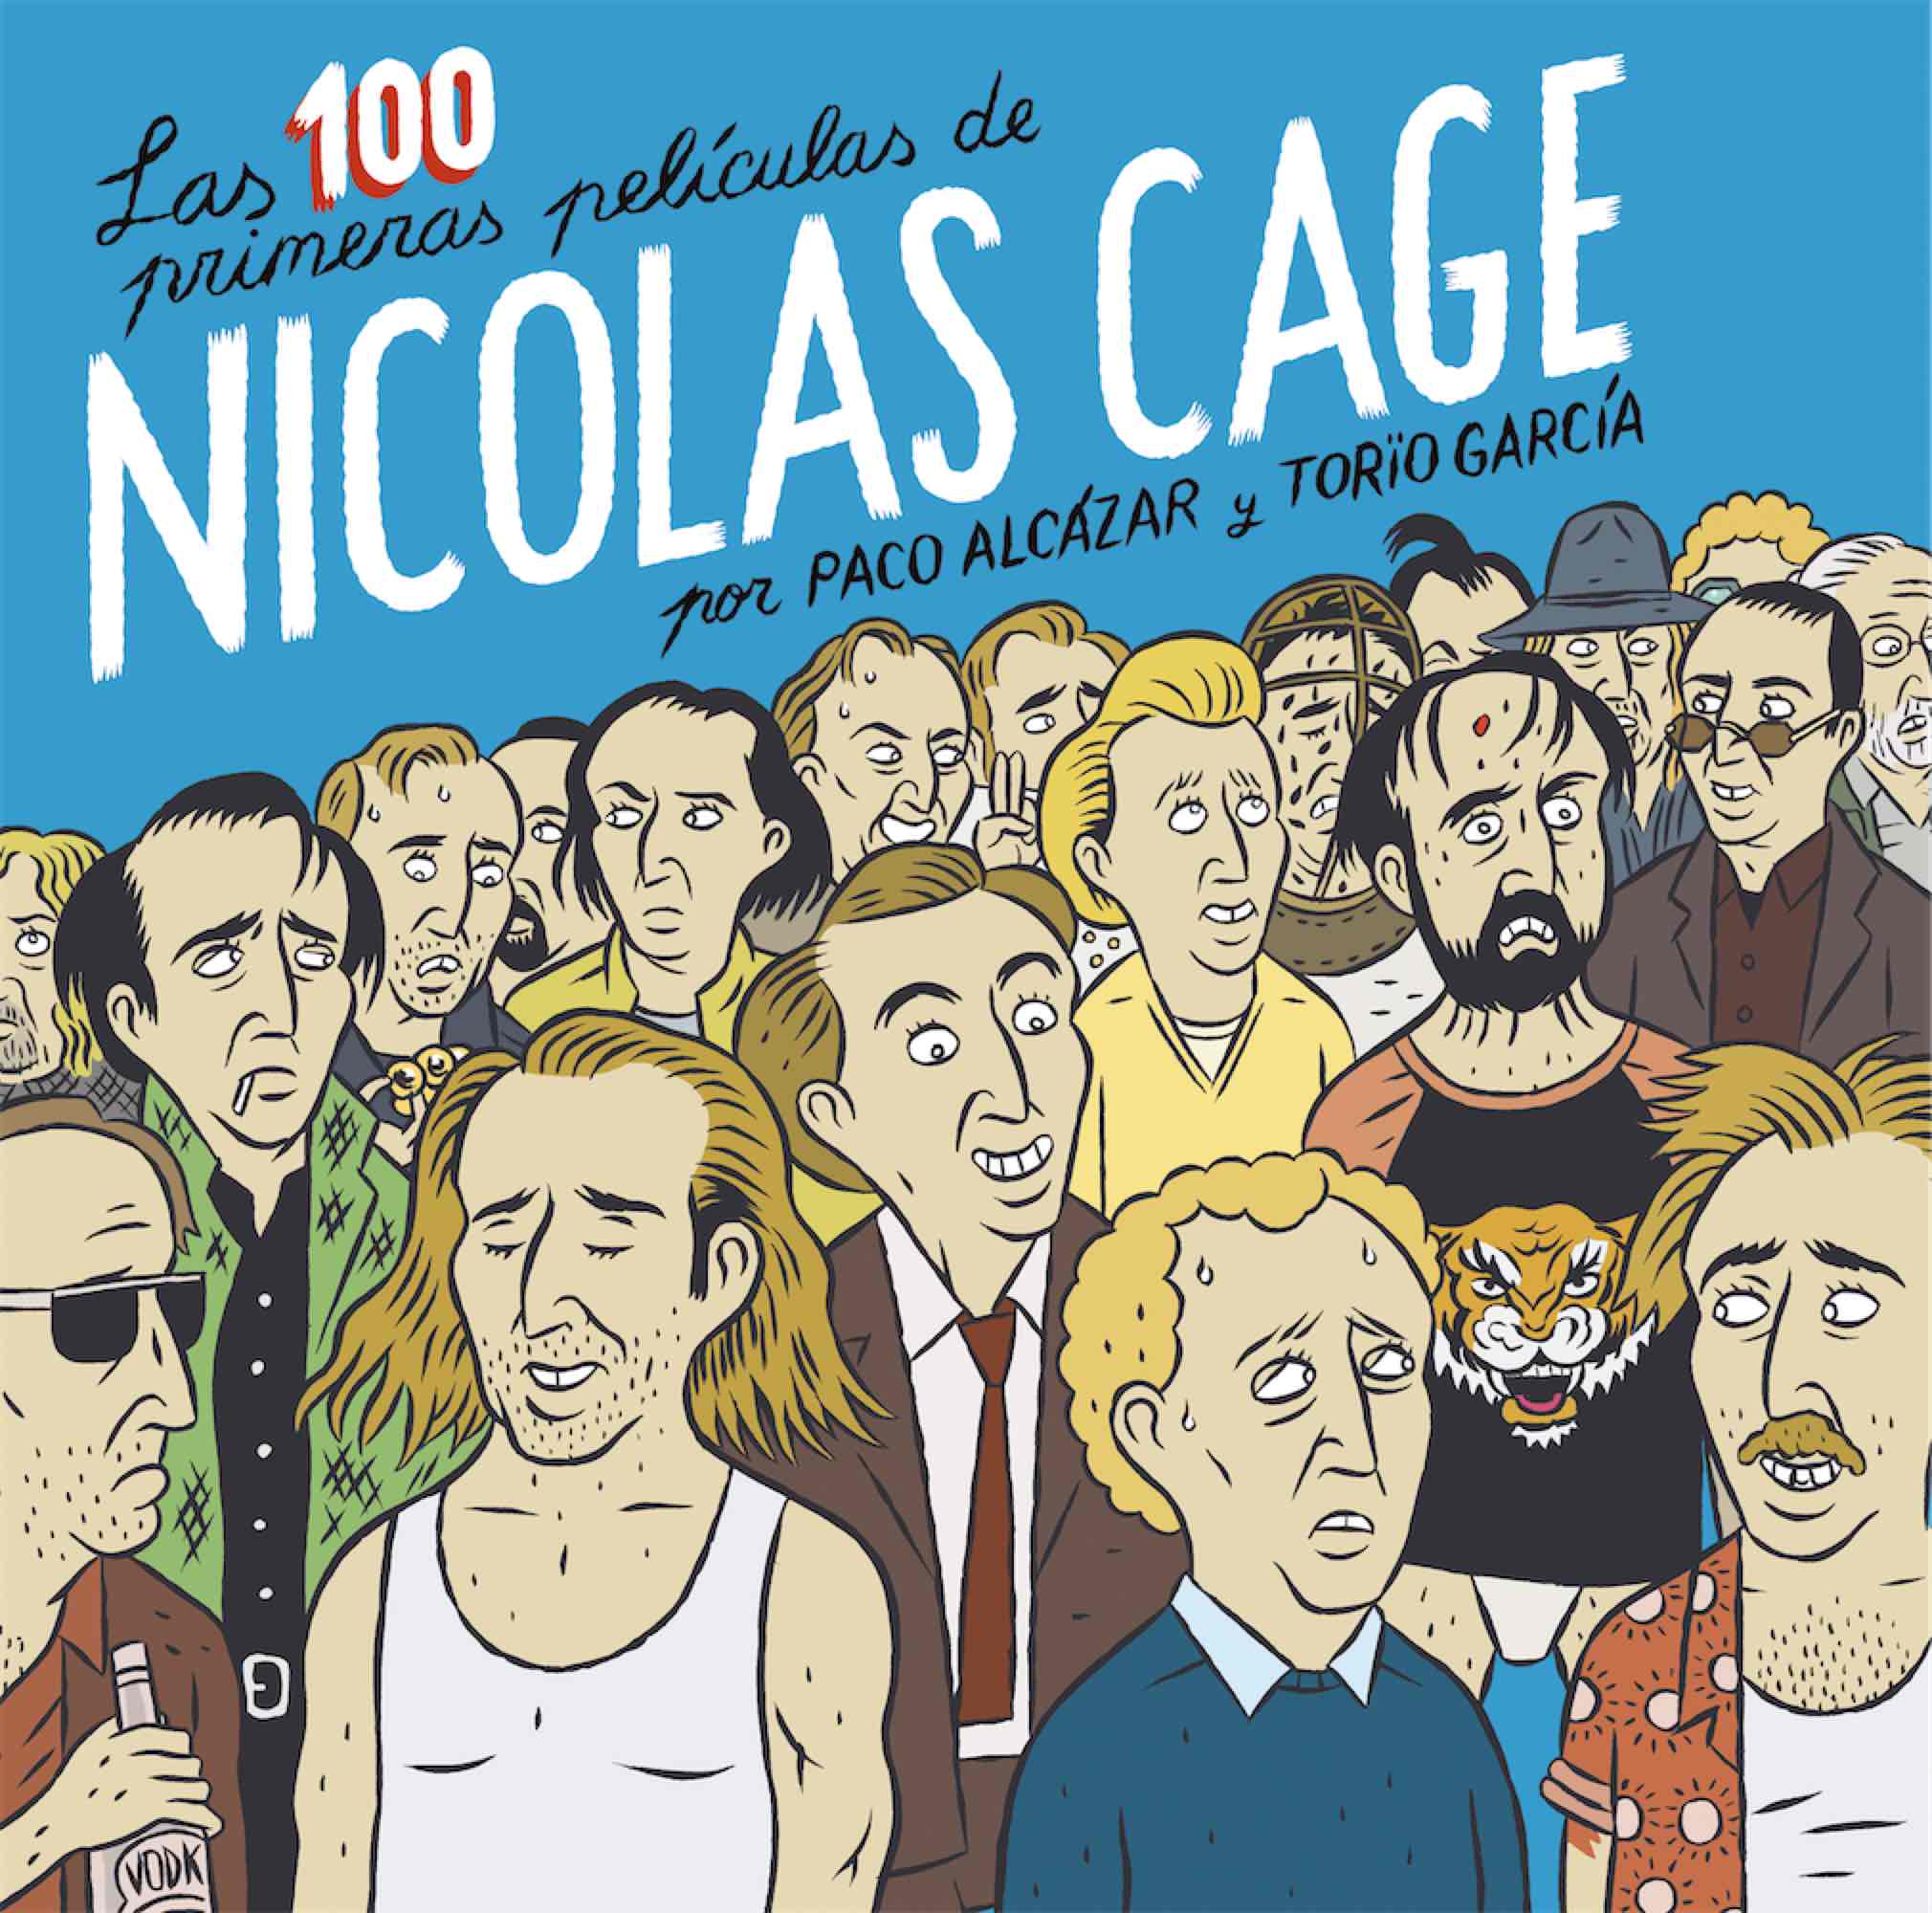 LAS 100 PRIMERAS PELICULAS DE NICOLAS CAGE